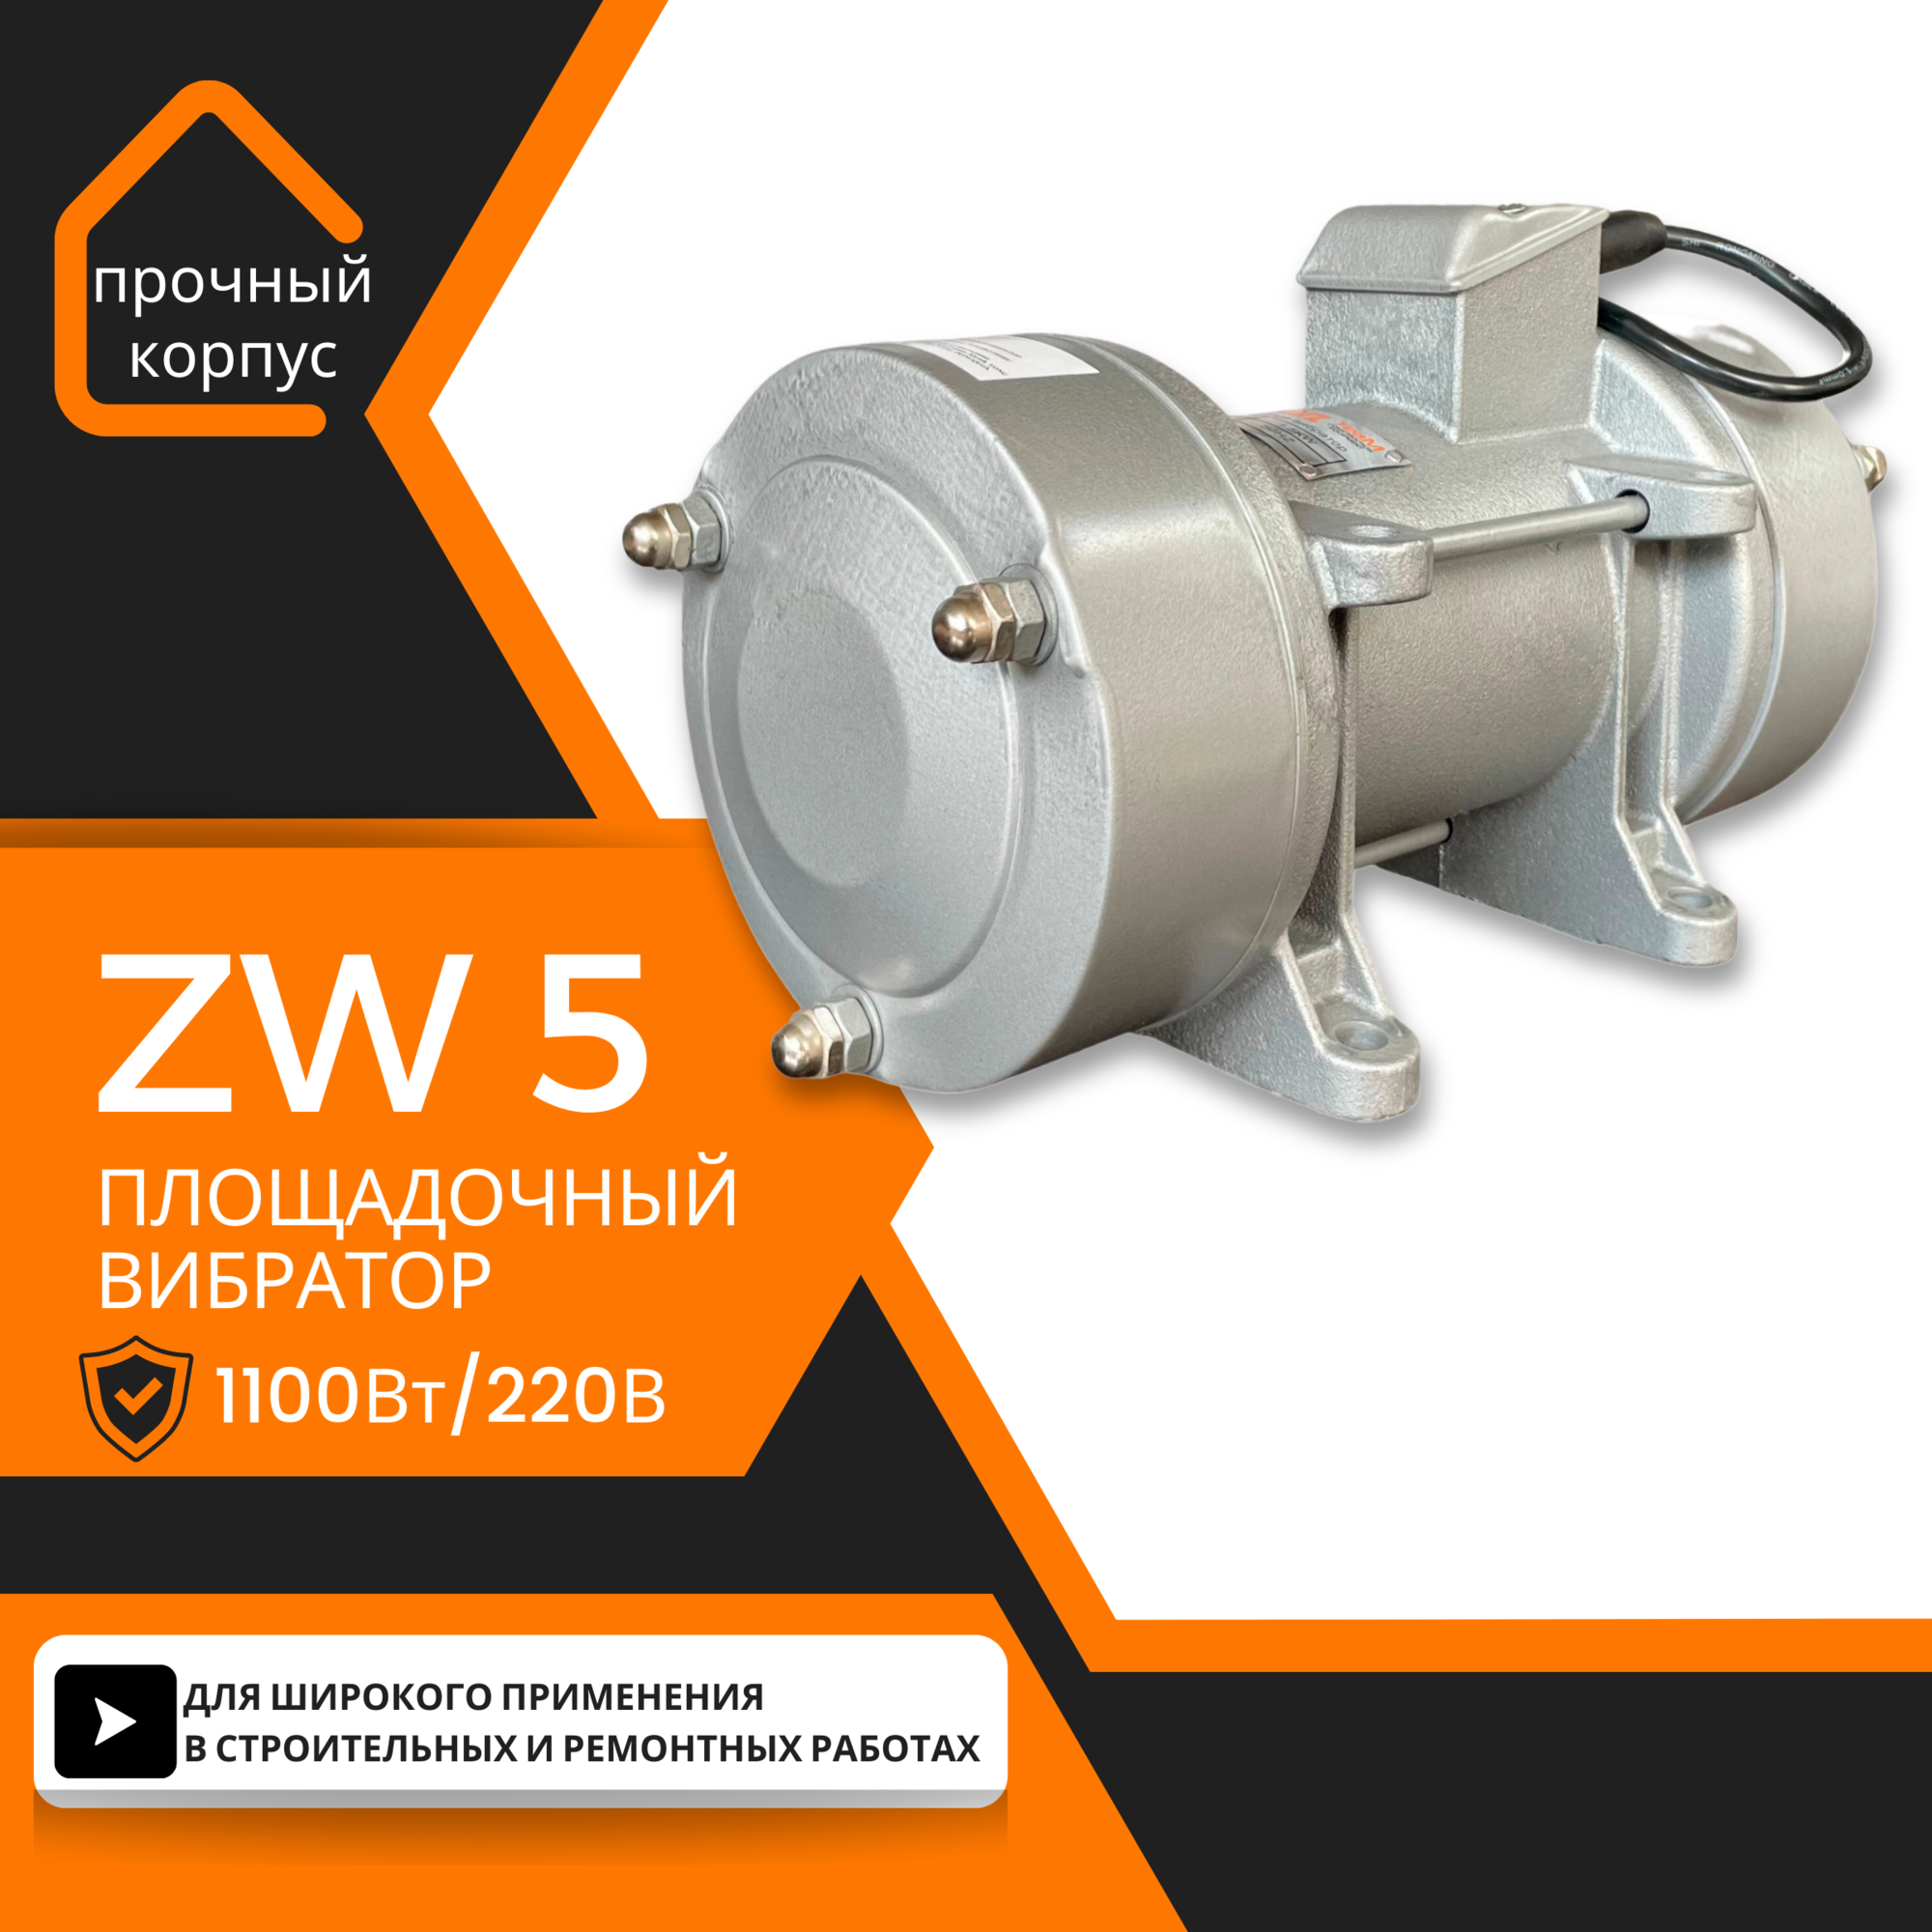 Площадочный вибратор TeaM ZW 5 (1100Вт/ 220В)